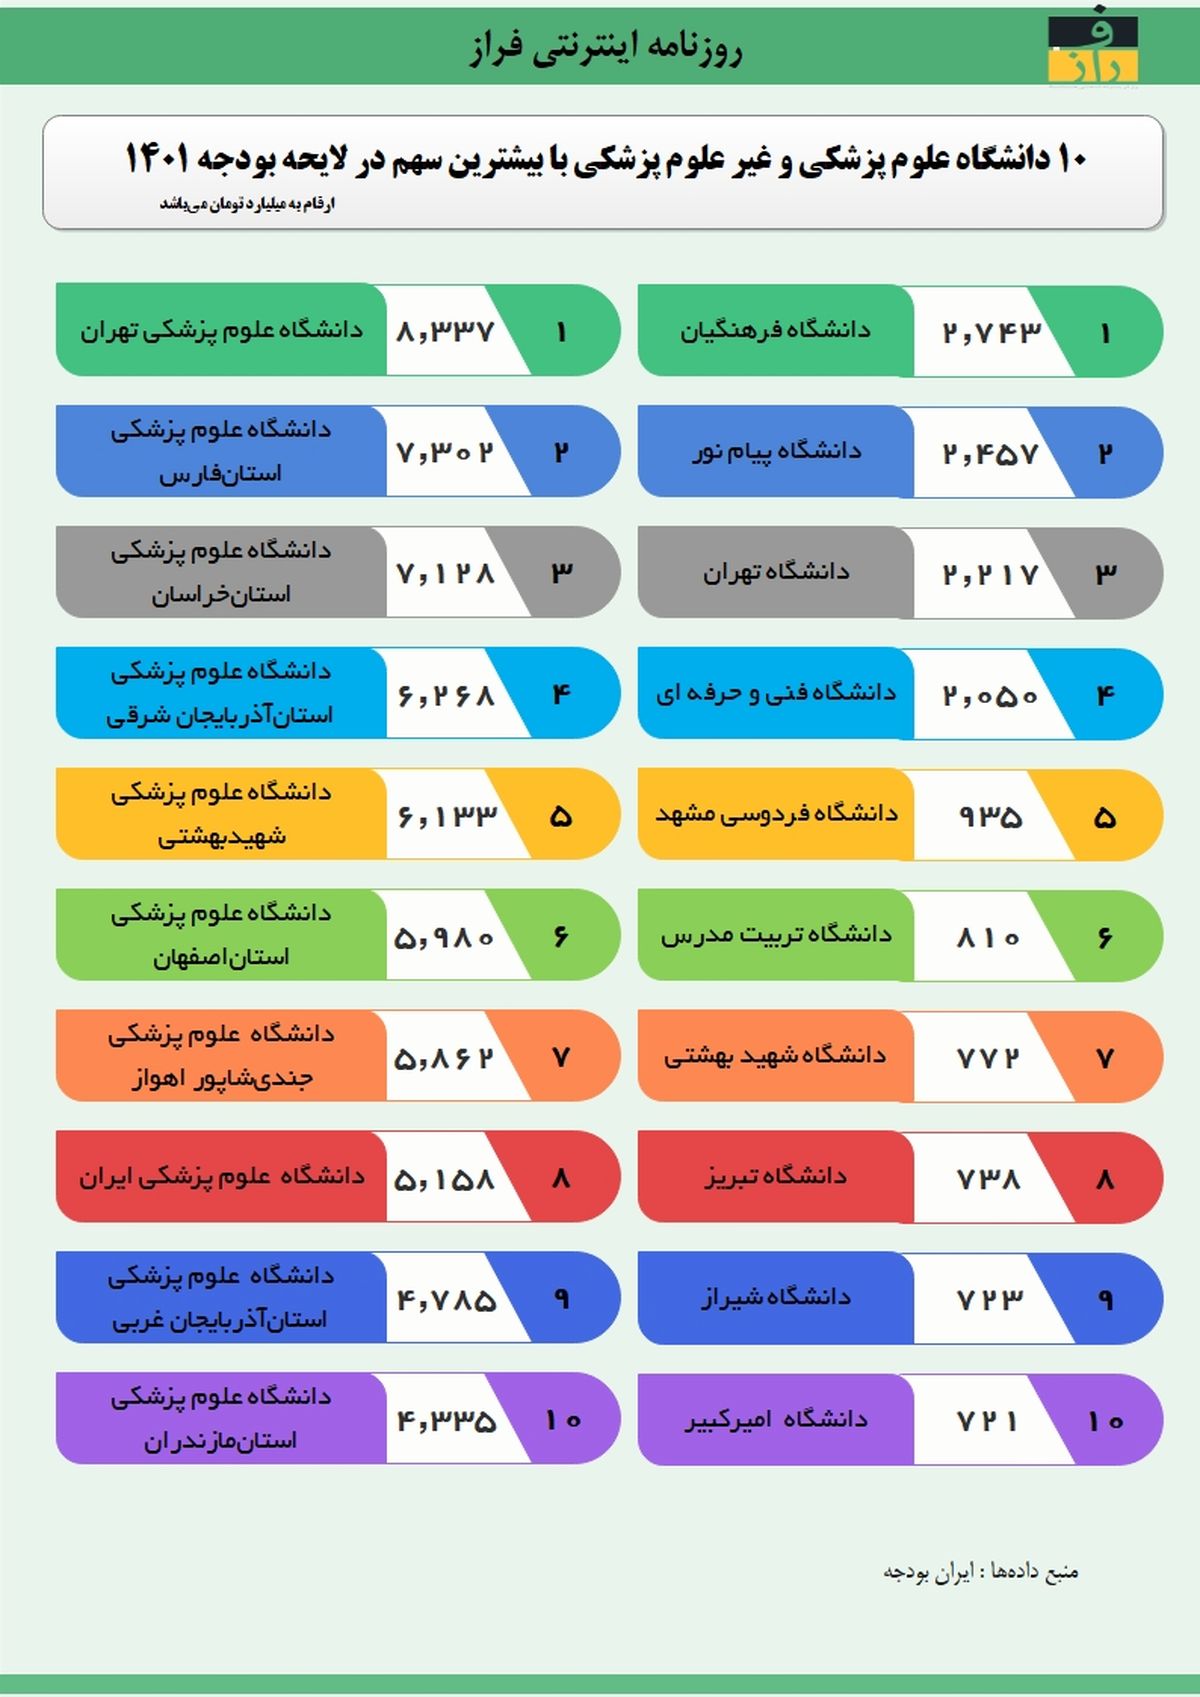 دانشگاه شریف در بین ۱۰ دانشگاه اول ایران نیست + عکس